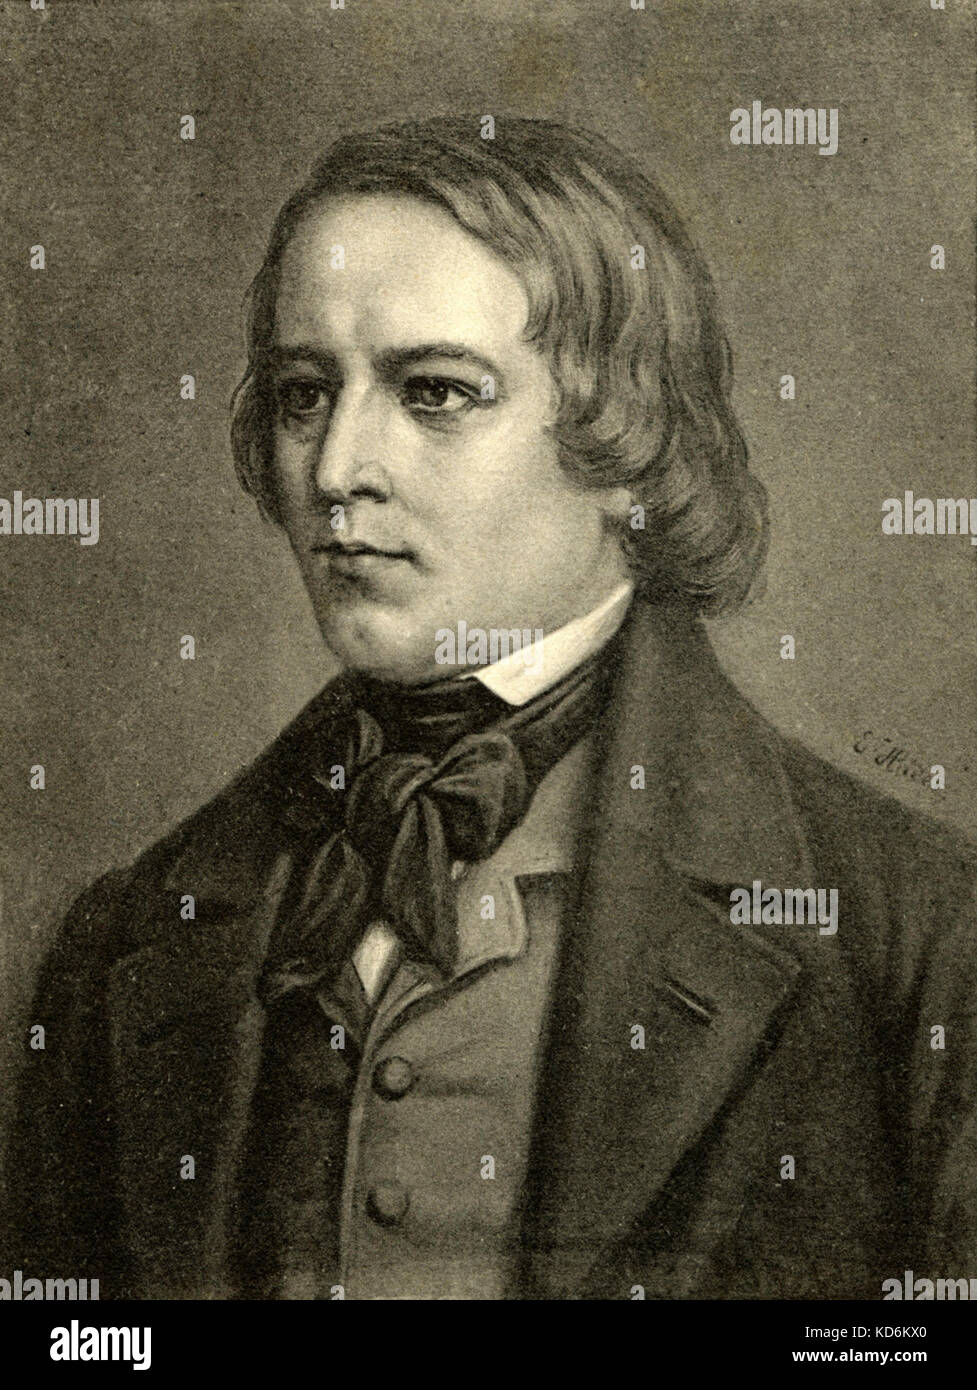 Robert Schumann - portrait. Compositeur allemand, 1810-1856 Carte postale Banque D'Images